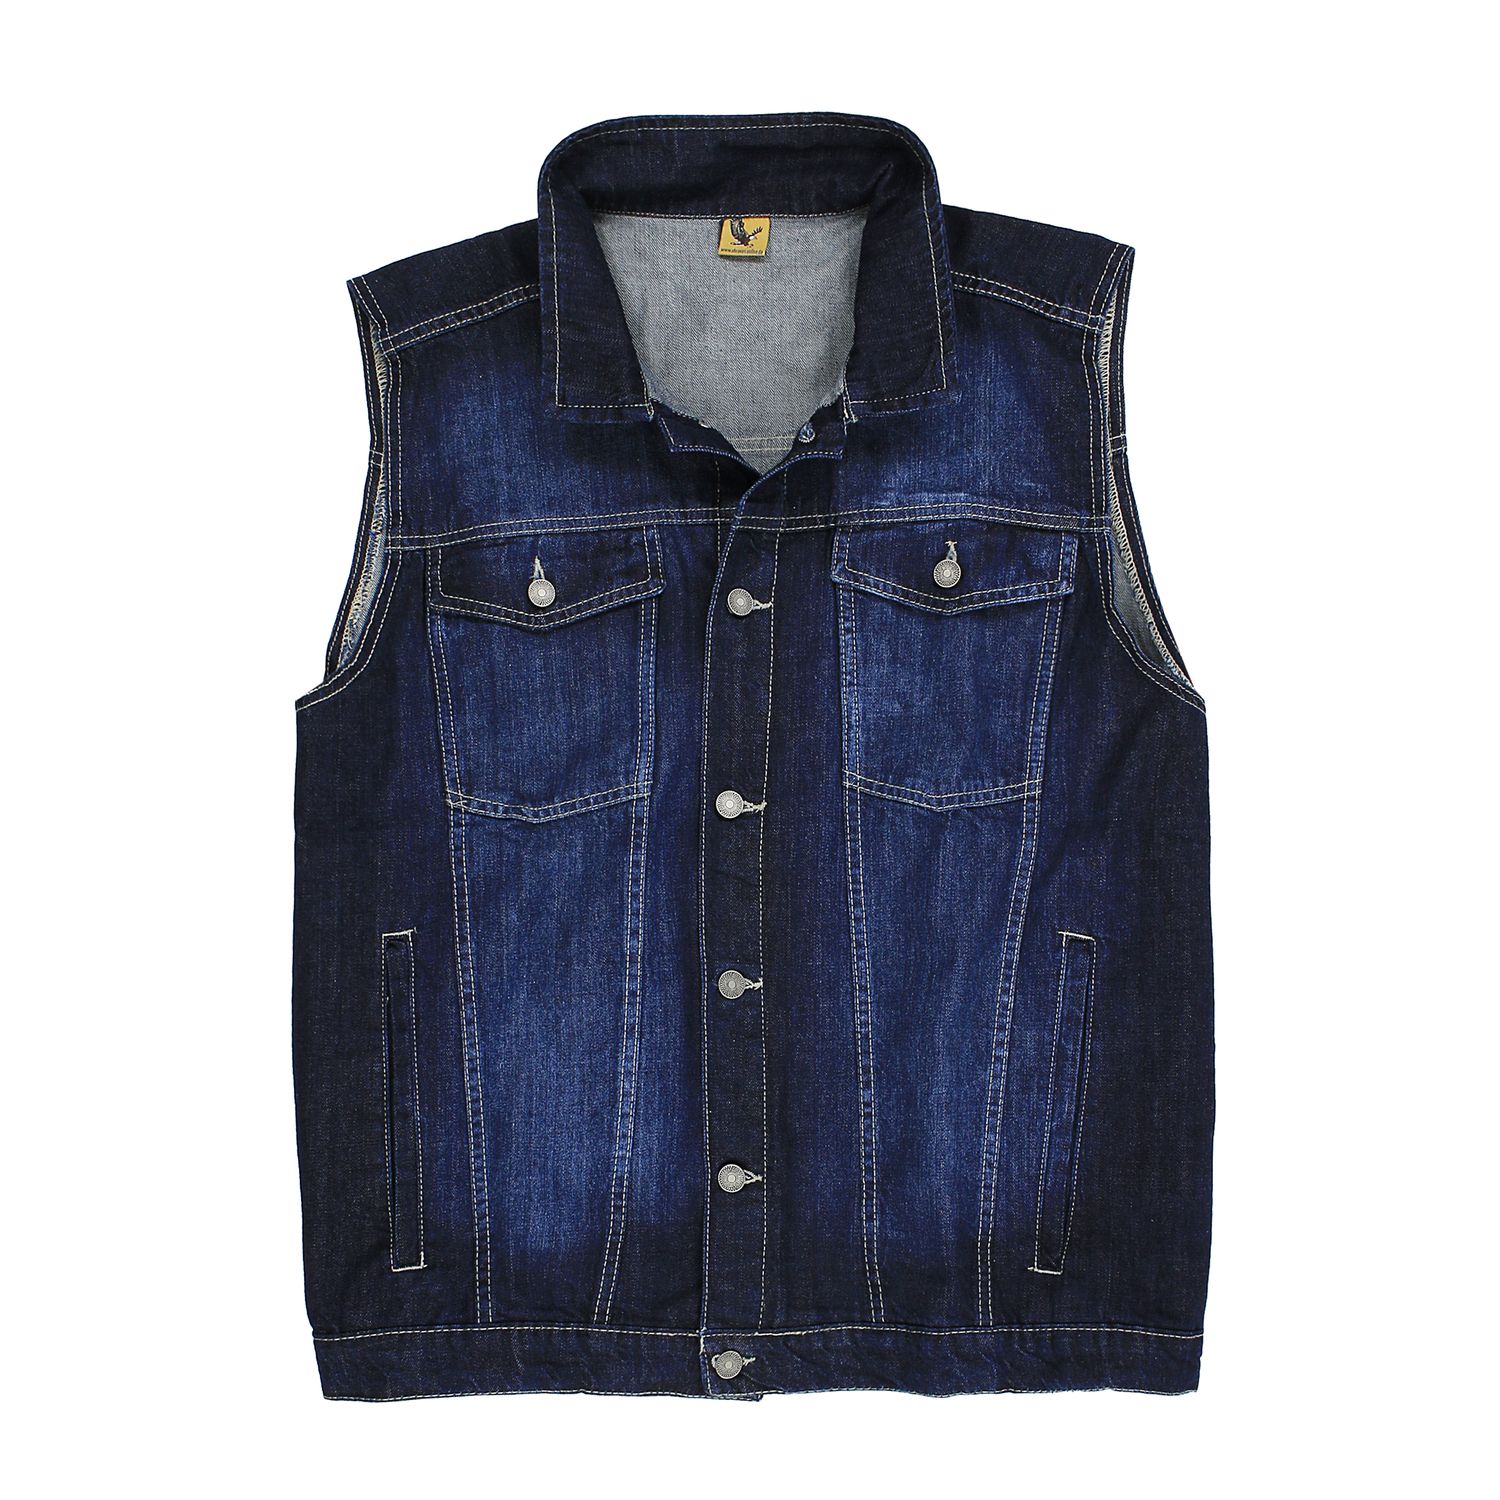 Jeans vest by Abraxas up to oversize 12XL - dark blue, stonewash